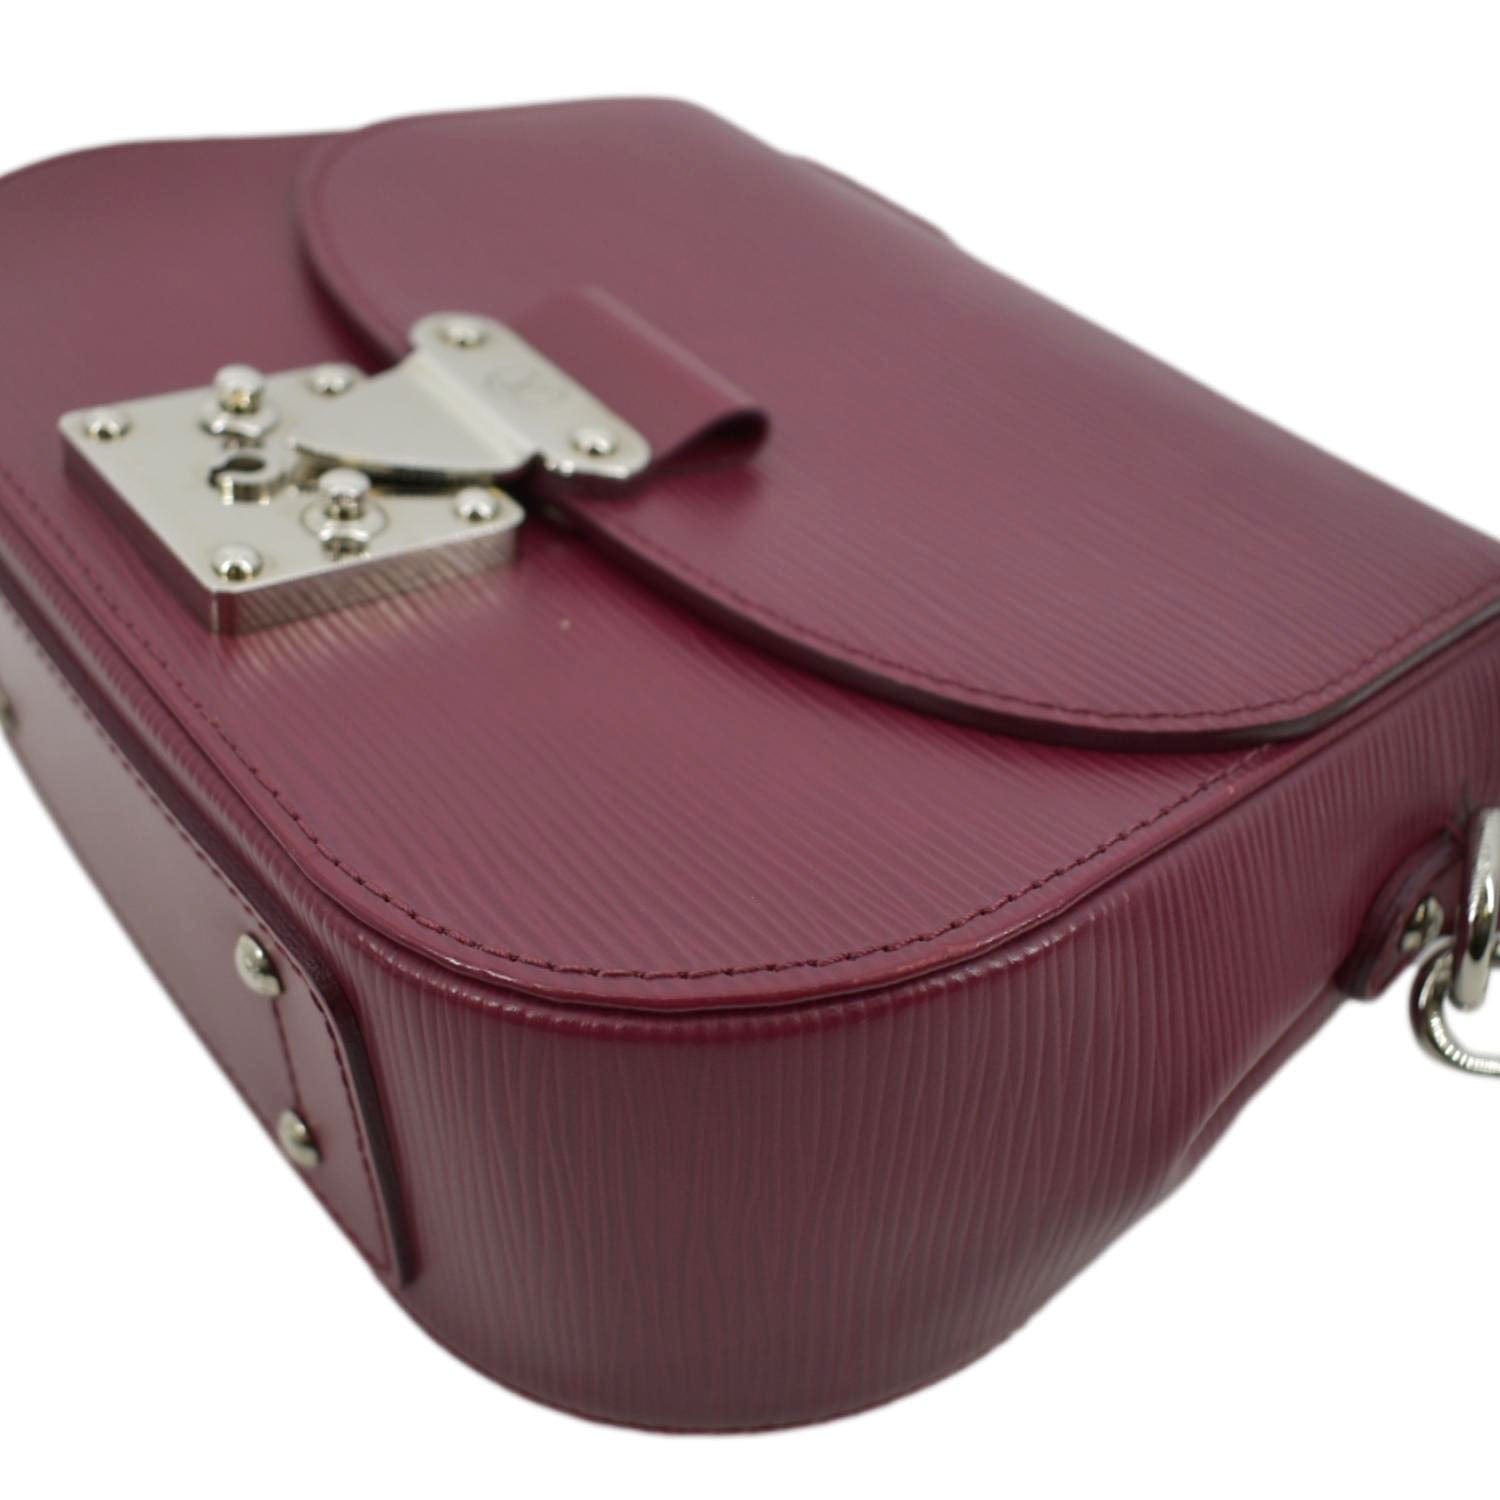 Louis Vuitton Epi Leather Eden PM Shoulder Bag, Louis Vuitton Handbags